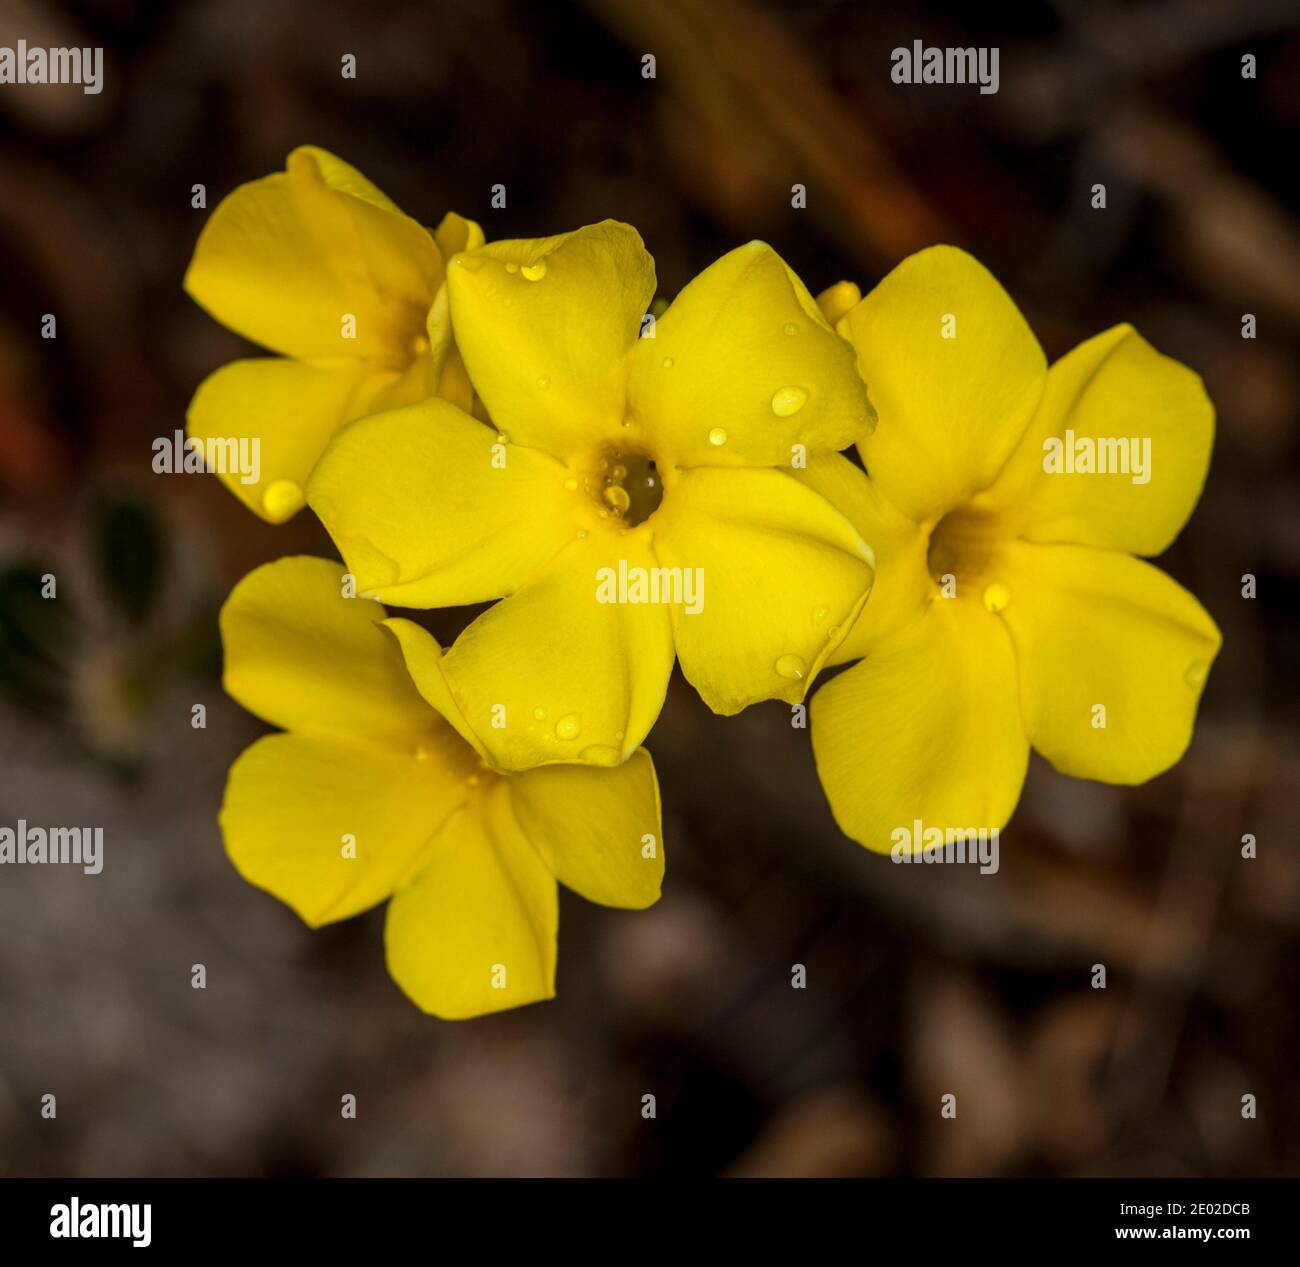 Groupe de fleurs jaunes vives de Pachypodium densiflorum, une plante succulente tolérante à la sécheresse, sur fond brun foncé Banque D'Images